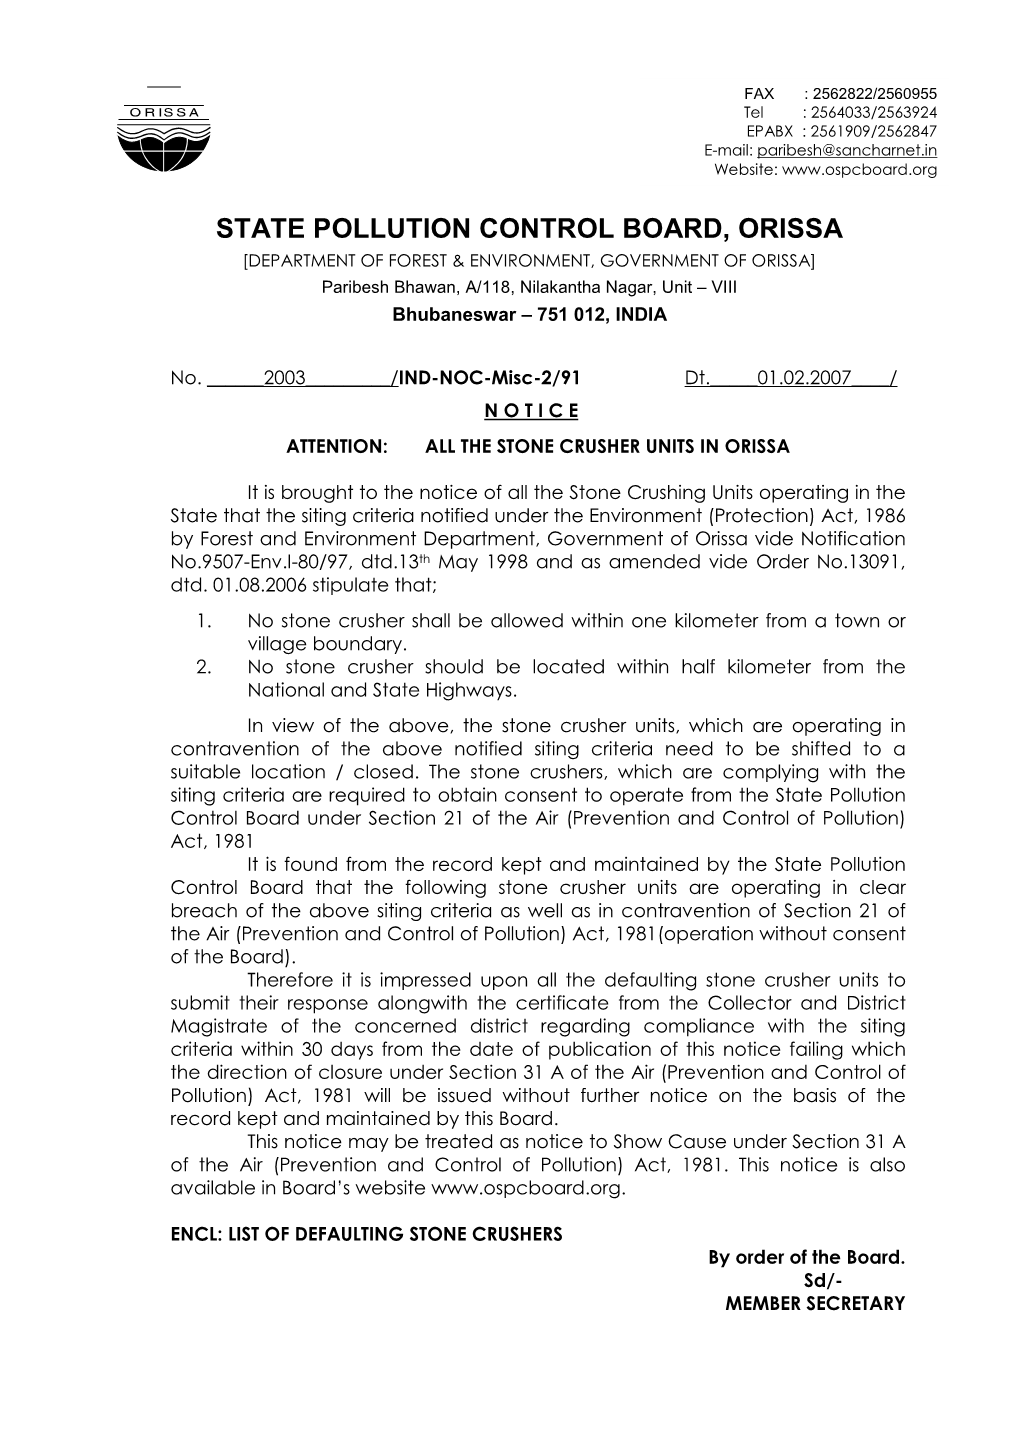 State Pollution Control Board, Orissa